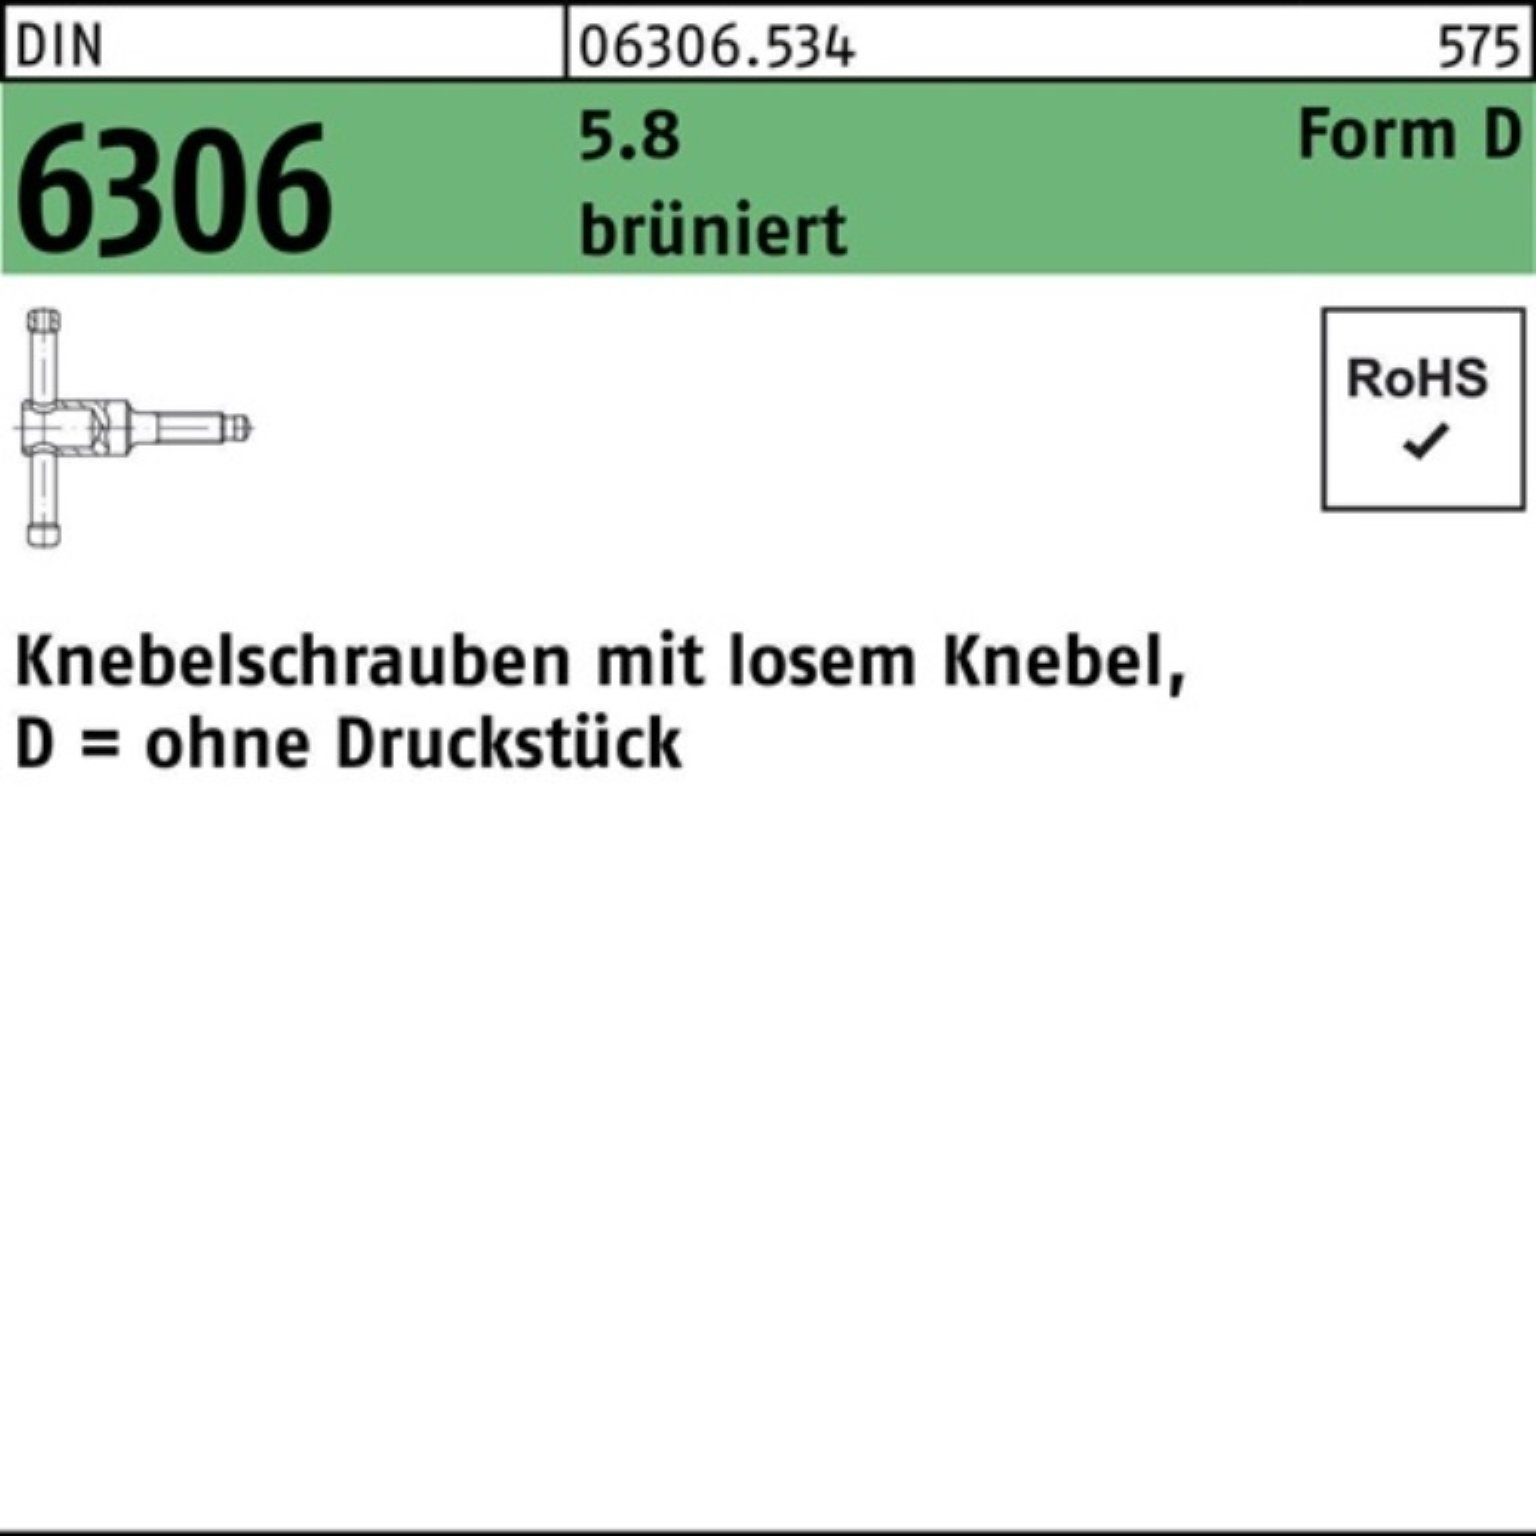 Knebelschraube 90 Schraube DM 20x Reyher brünier DIN Pack losen 100er Knebel 5.8 6306